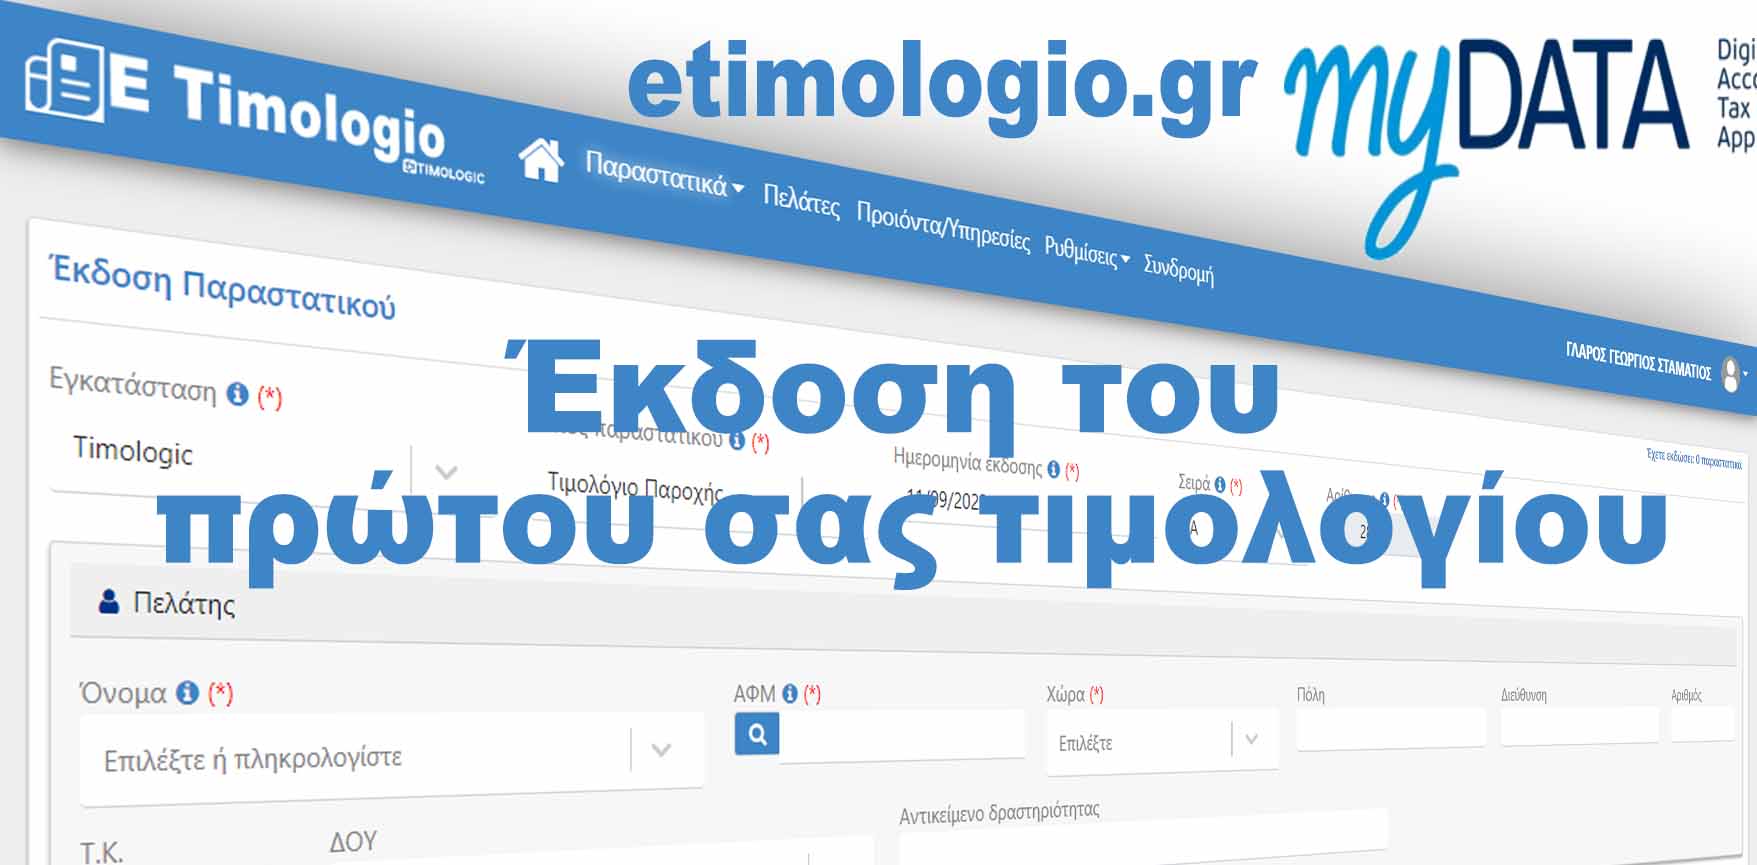 Έκδοση του πρώτου σας τιμολογίου με την ηλεκτρονική τιμολόγηση eTimologio.gr